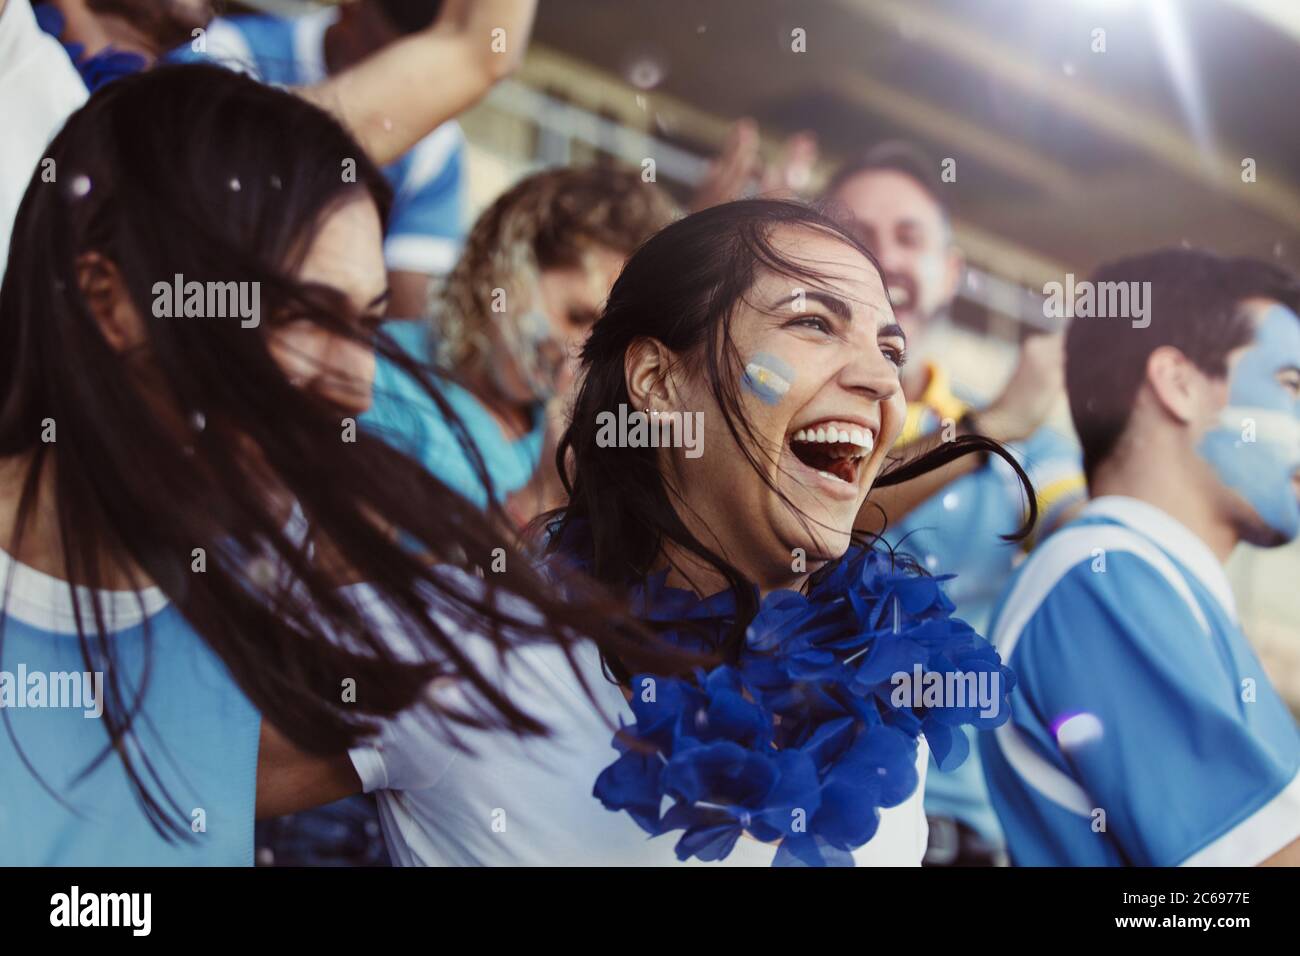 Menge von Sportfans aus Argentinien jubeln während eines Spiels im Stadion. Gruppe von Freunden beobachten Sportspiel feiern, wenn ihr Team erzielte ein Tor Stockfoto